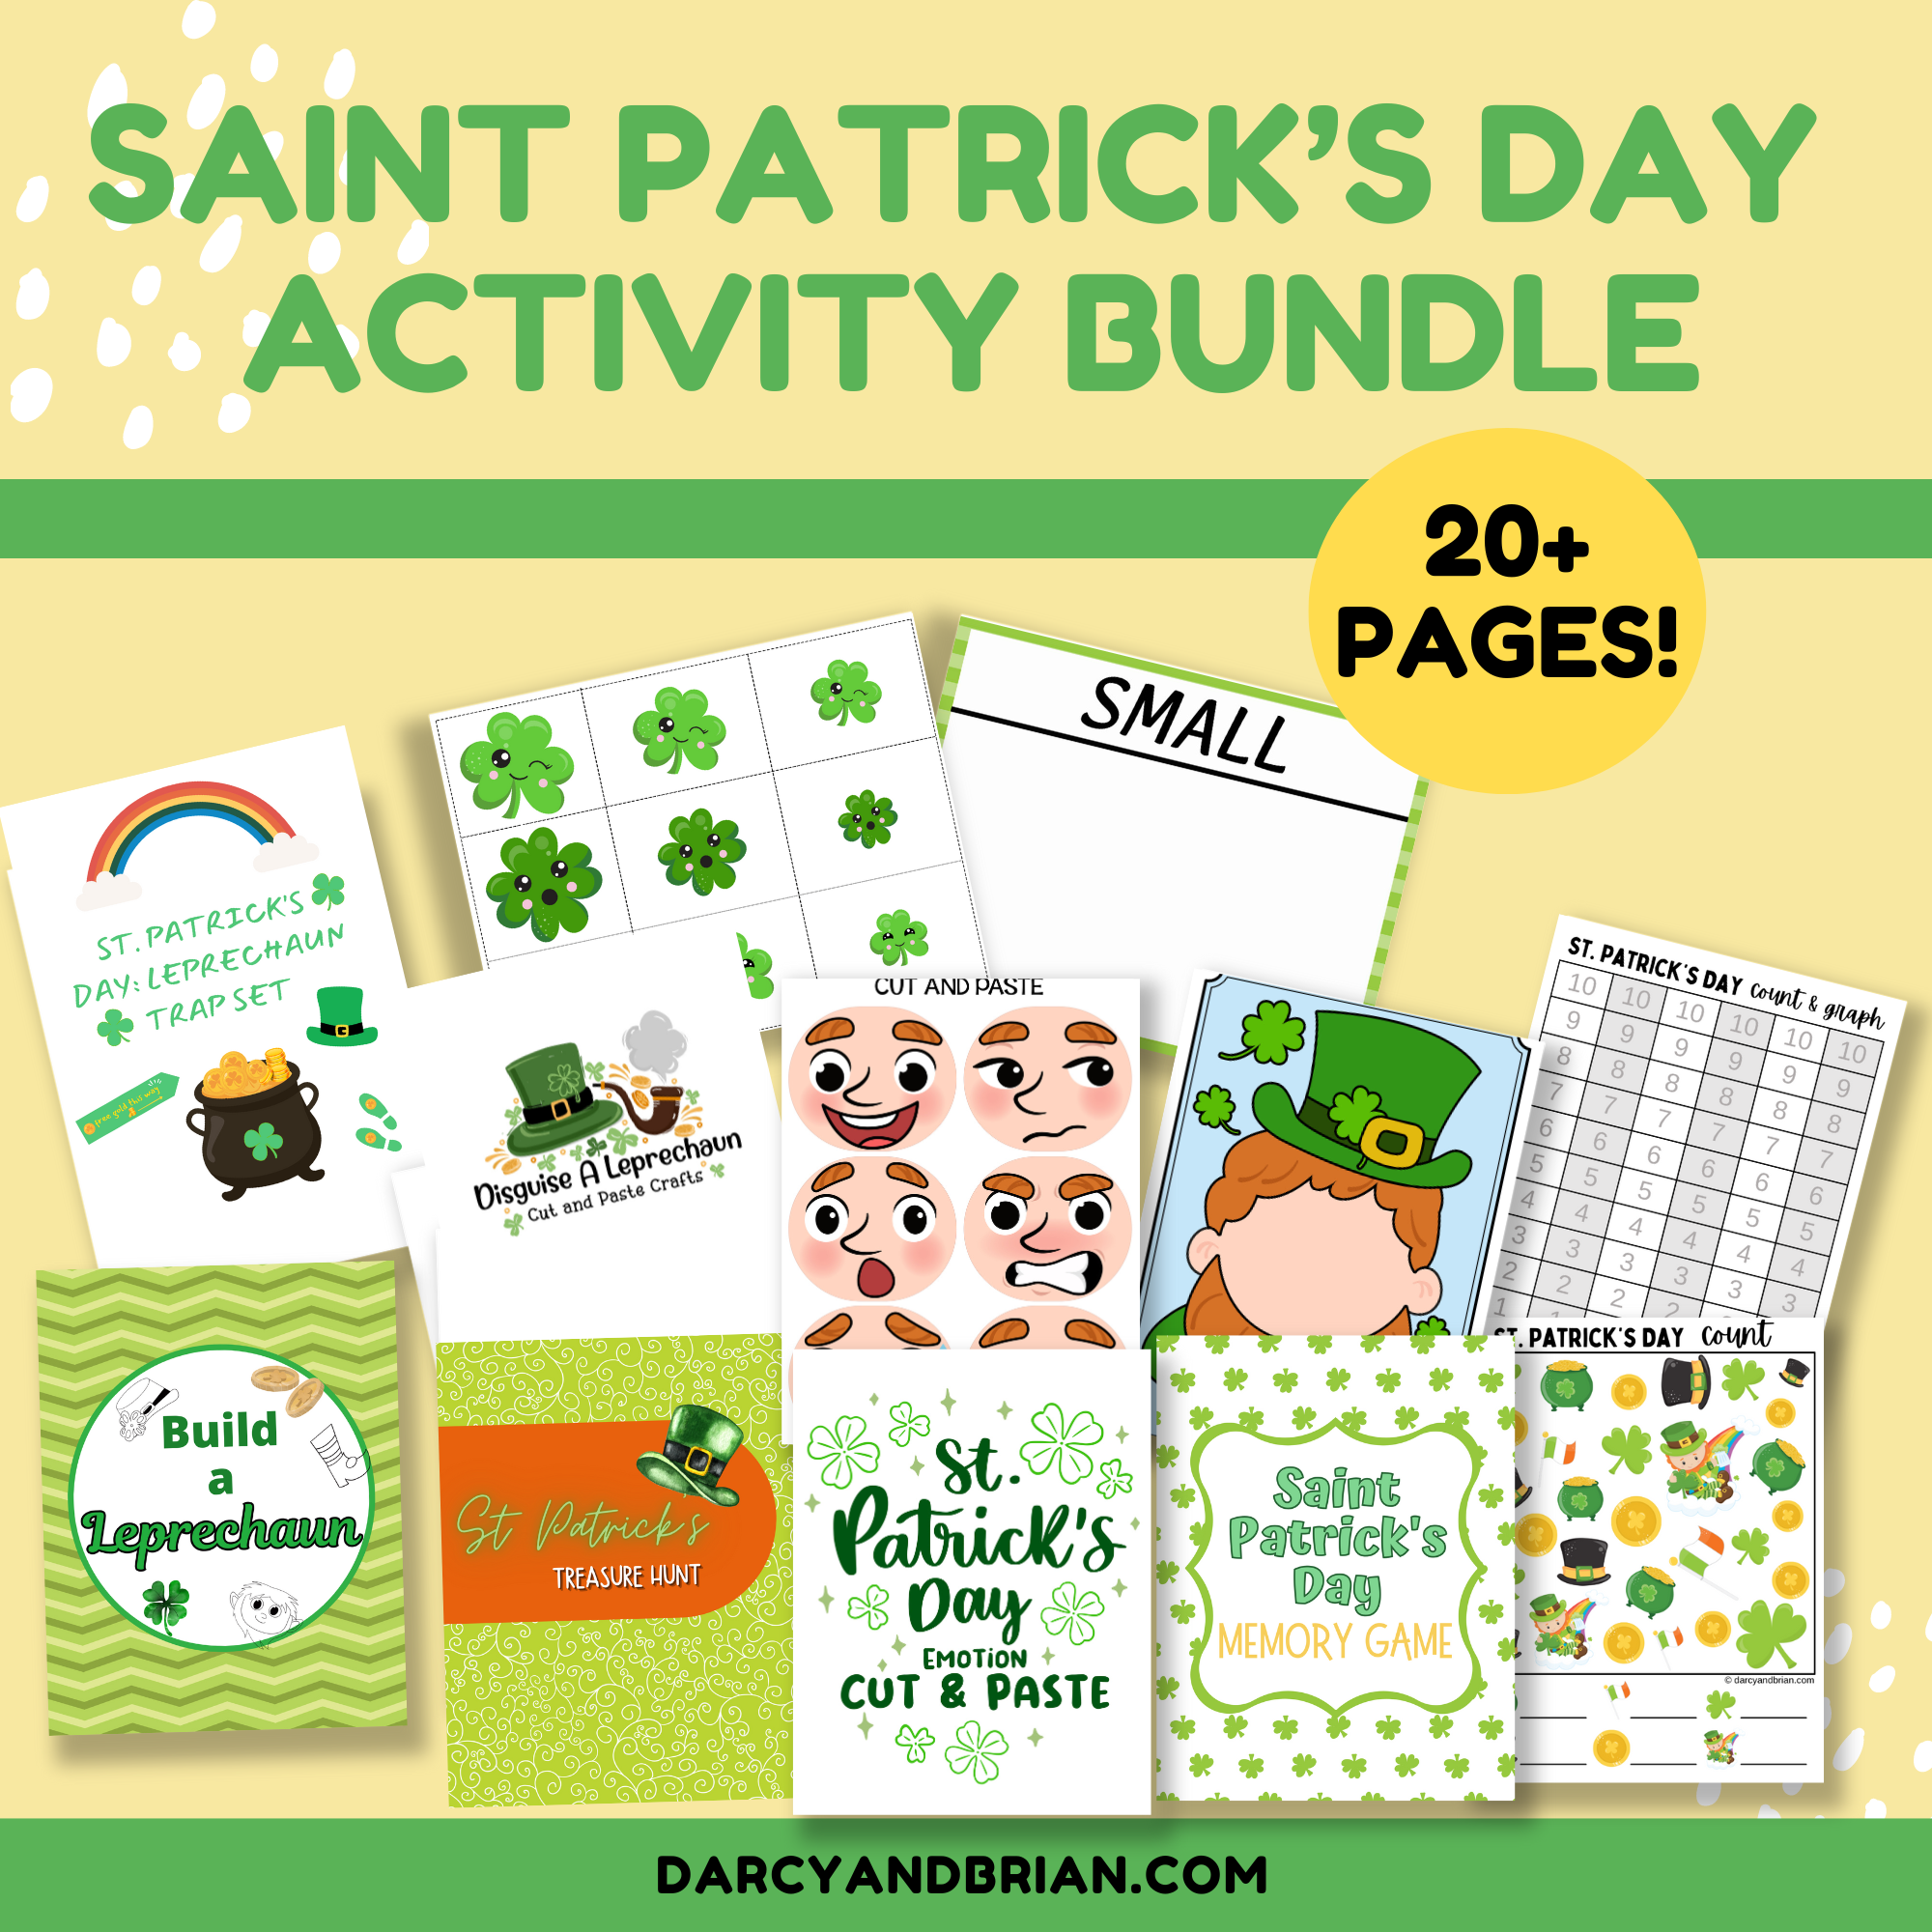 Saint Patrick's Day Activity Bundle